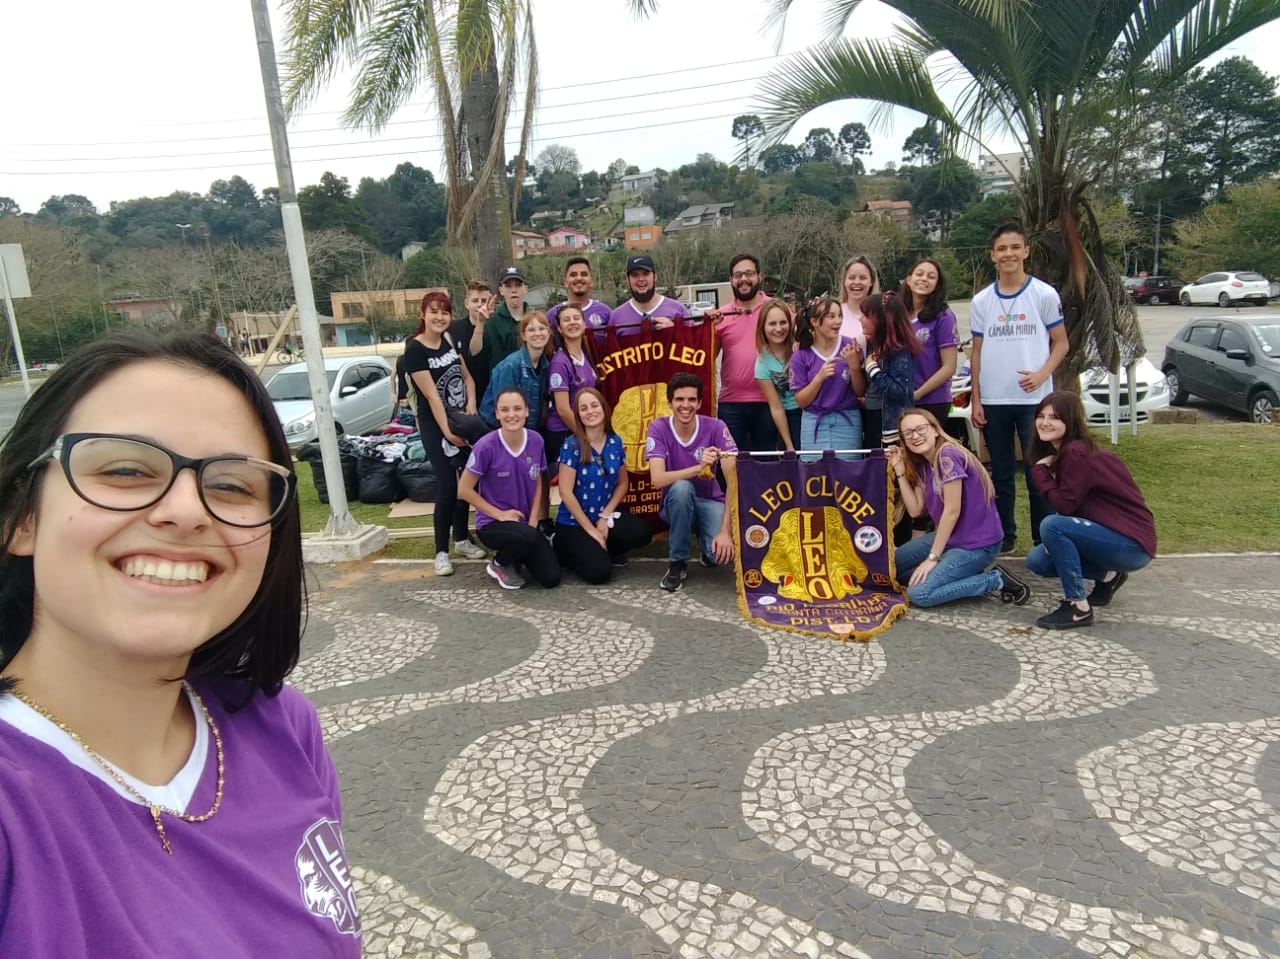 LEO Clube de Rio Negrinho realizou campanha varal solidário